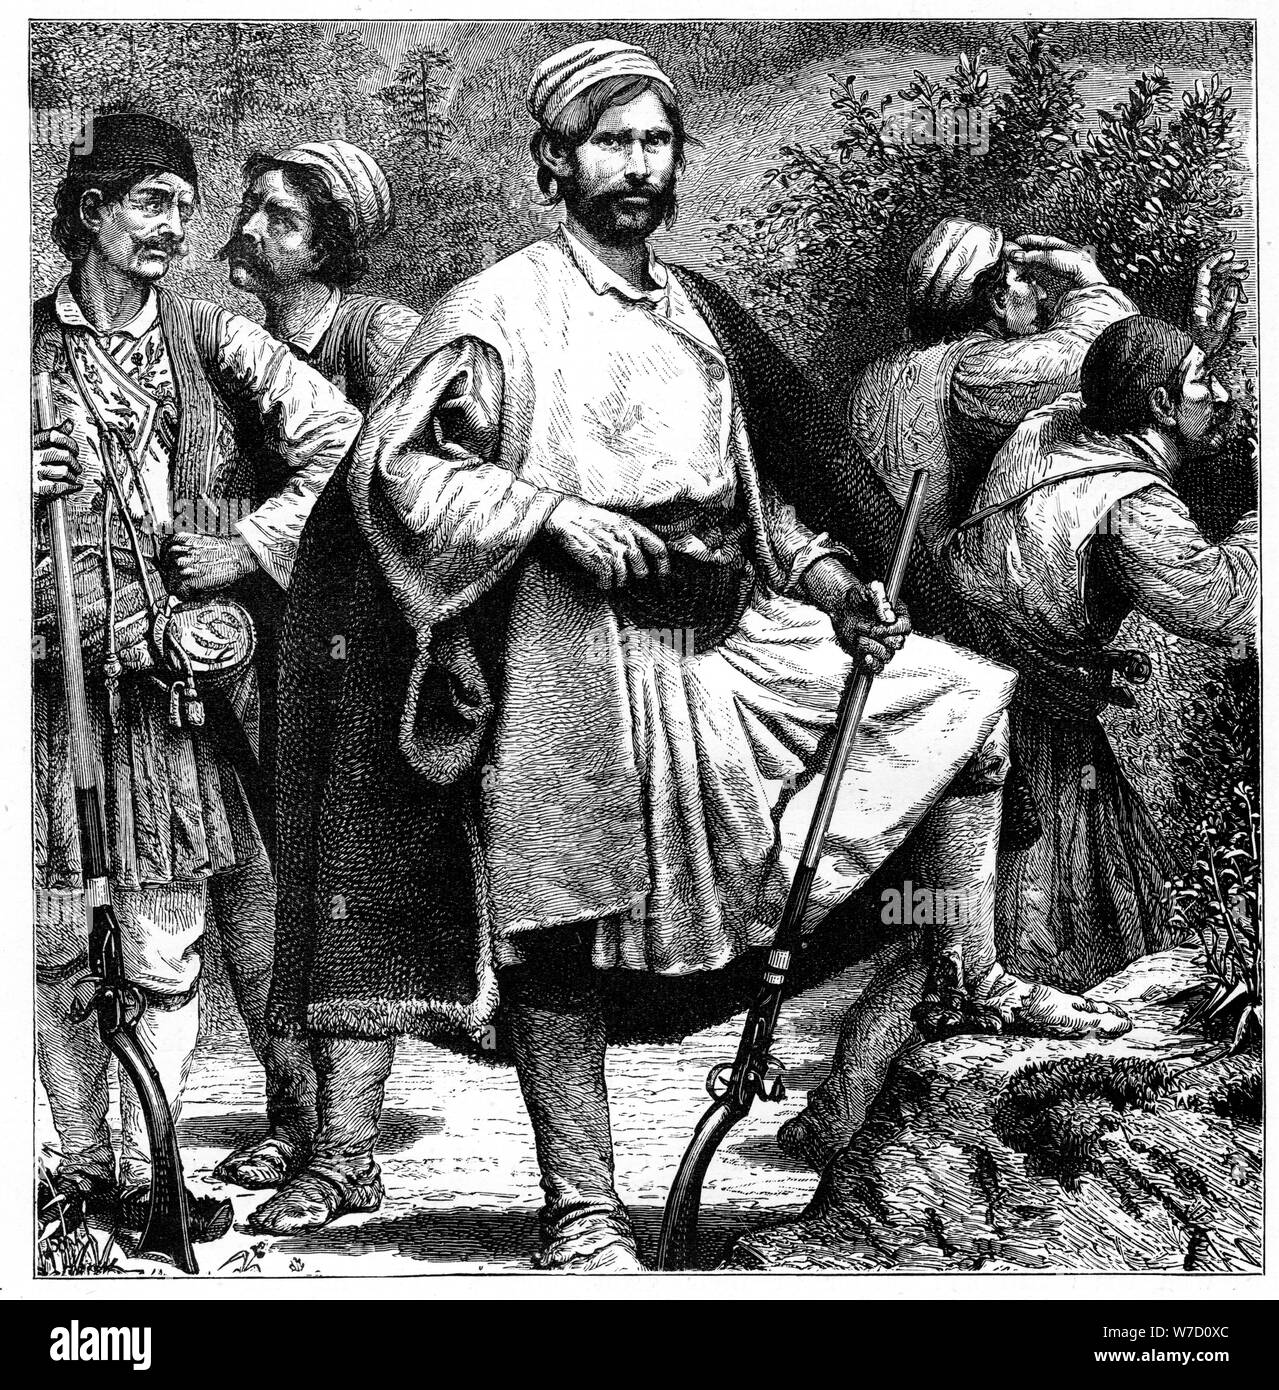 'Greek brigands', c1890. Artist: Unknown Stock Photo